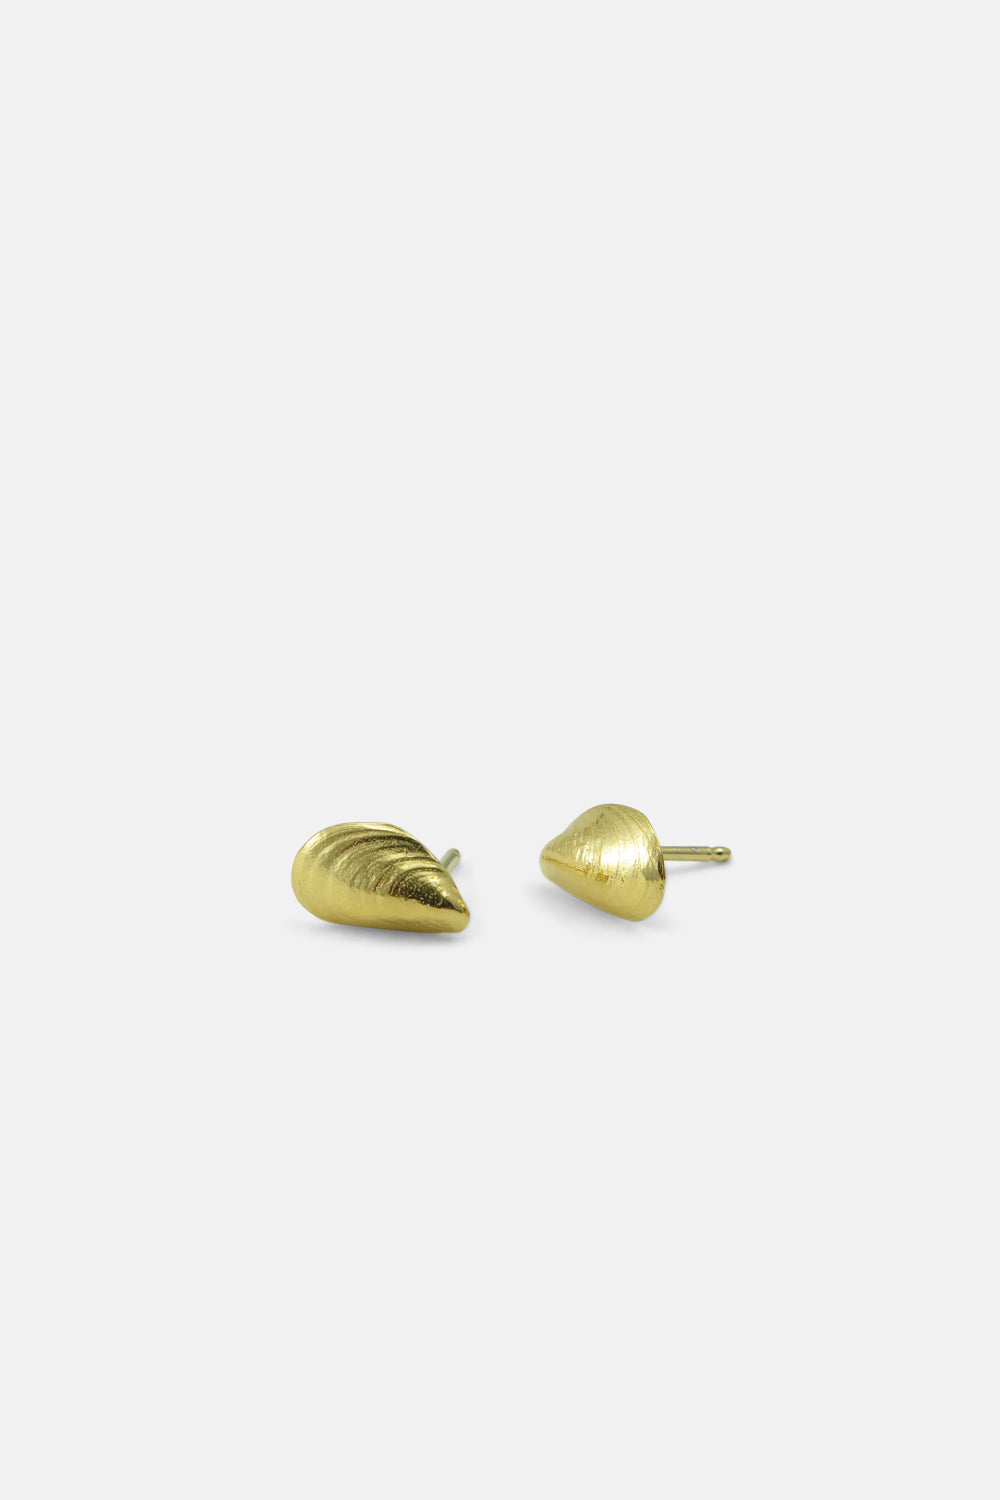 Mussel earrings